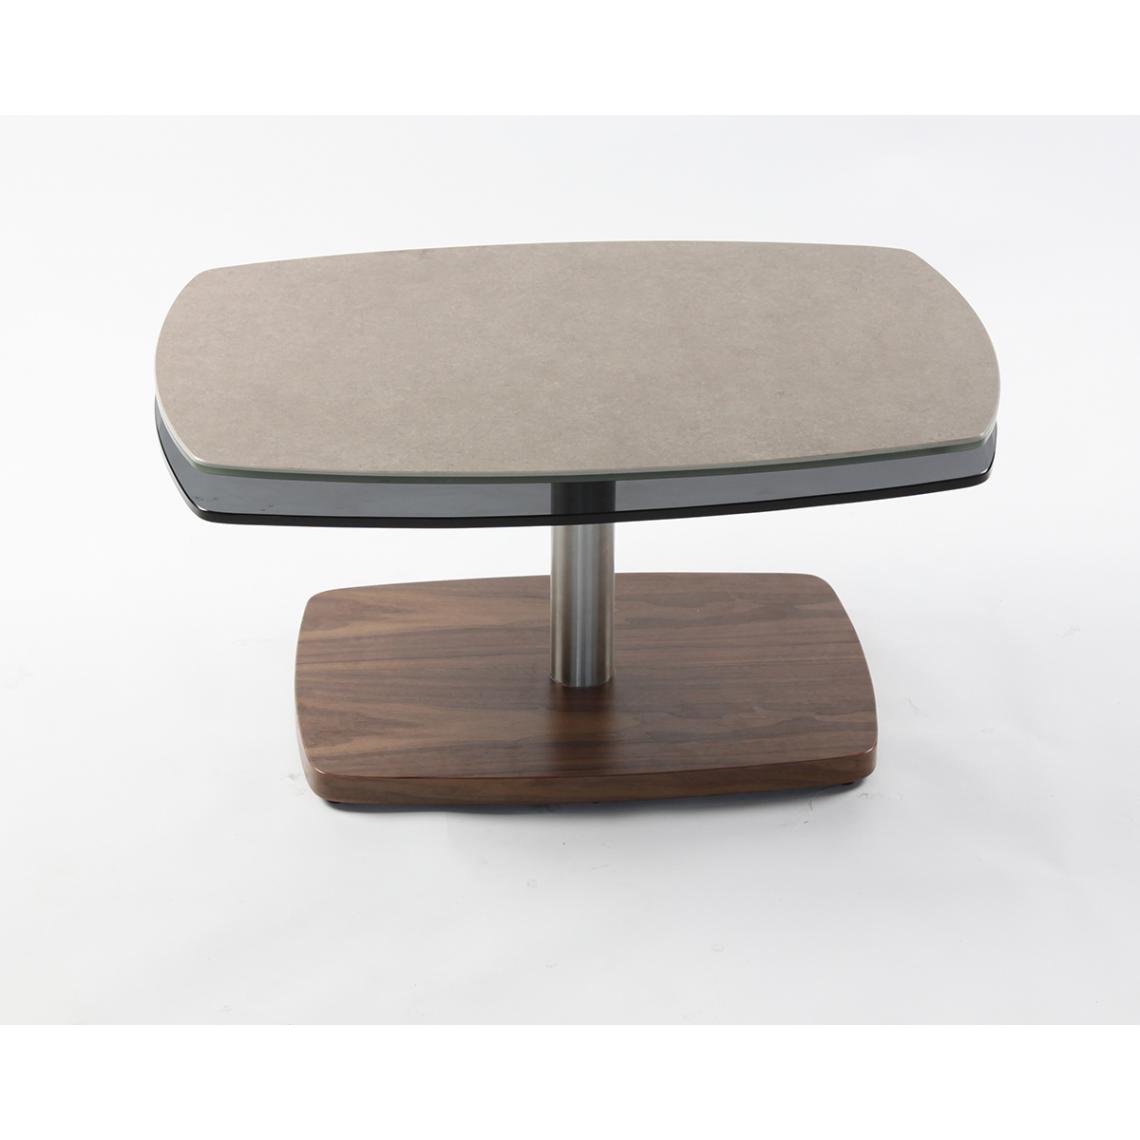 Pegane - Table basse en acier / céramique coloris gris pierre - Longueur 116 x Largeur 50 x hauteur 41 cm - Tables basses